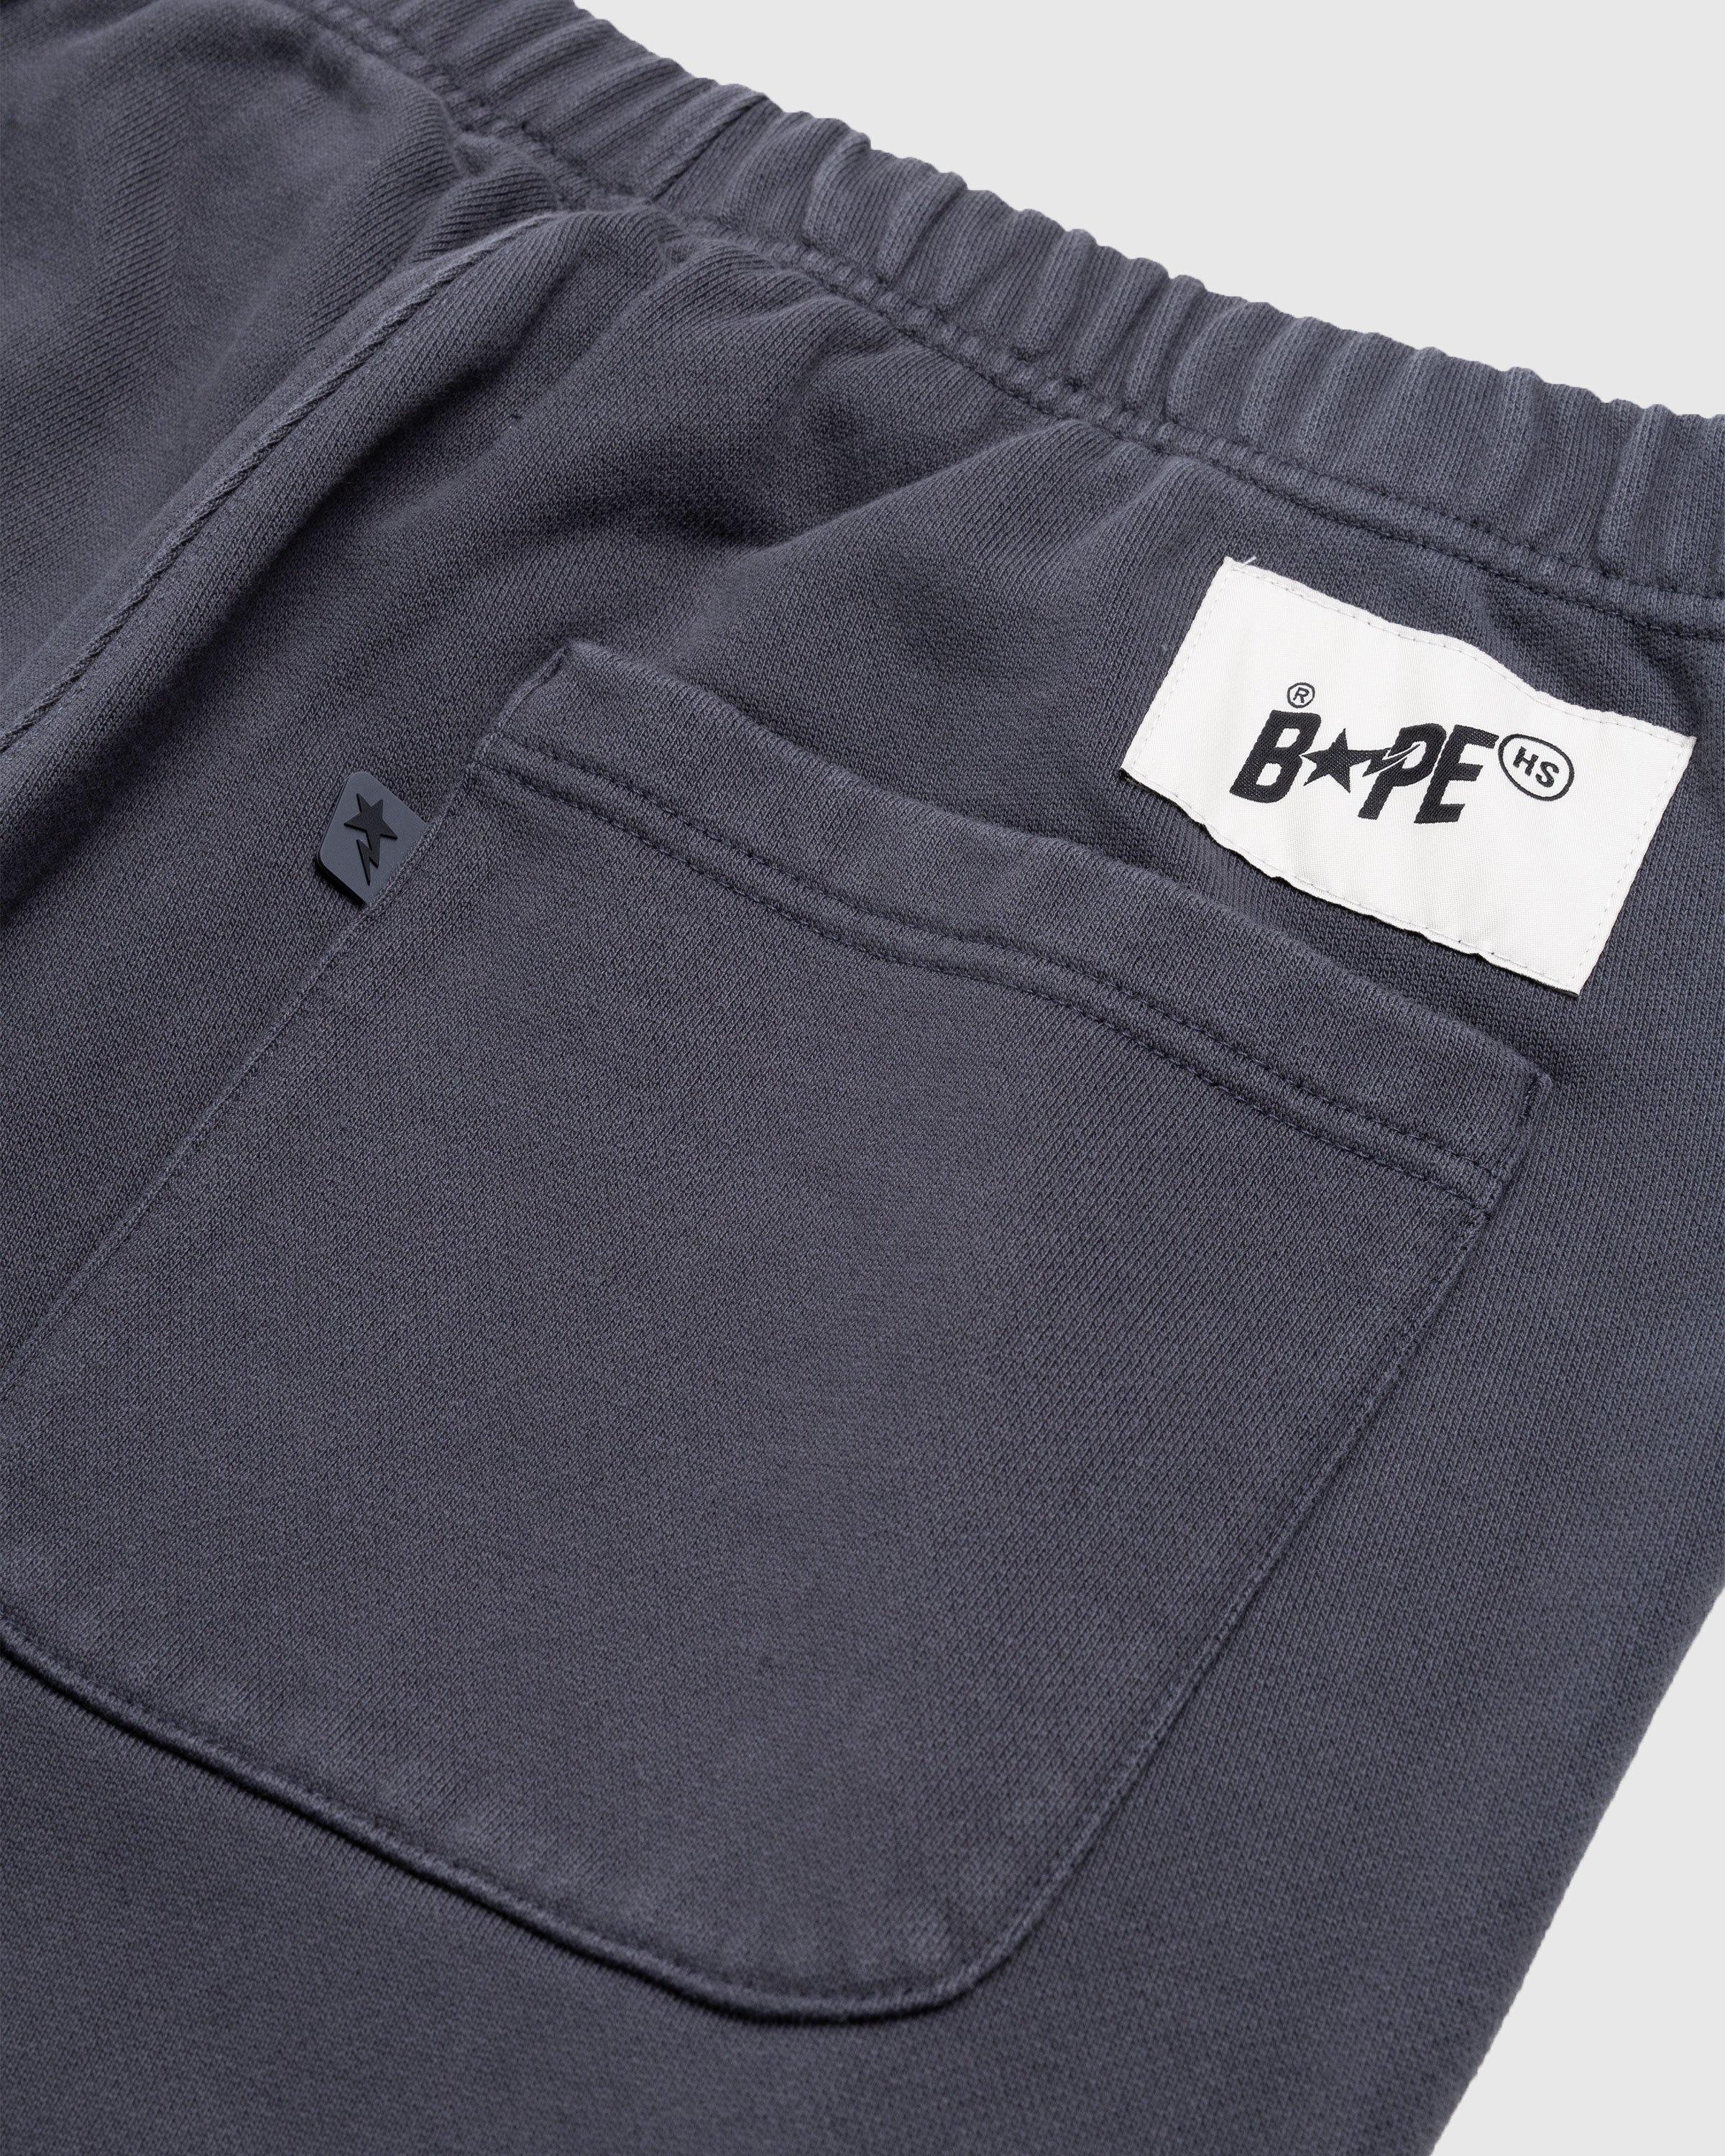 BAPE x Highsnobiety - Heavy Washed Sweat Pants Charcoal - Clothing - Grey - Image 6